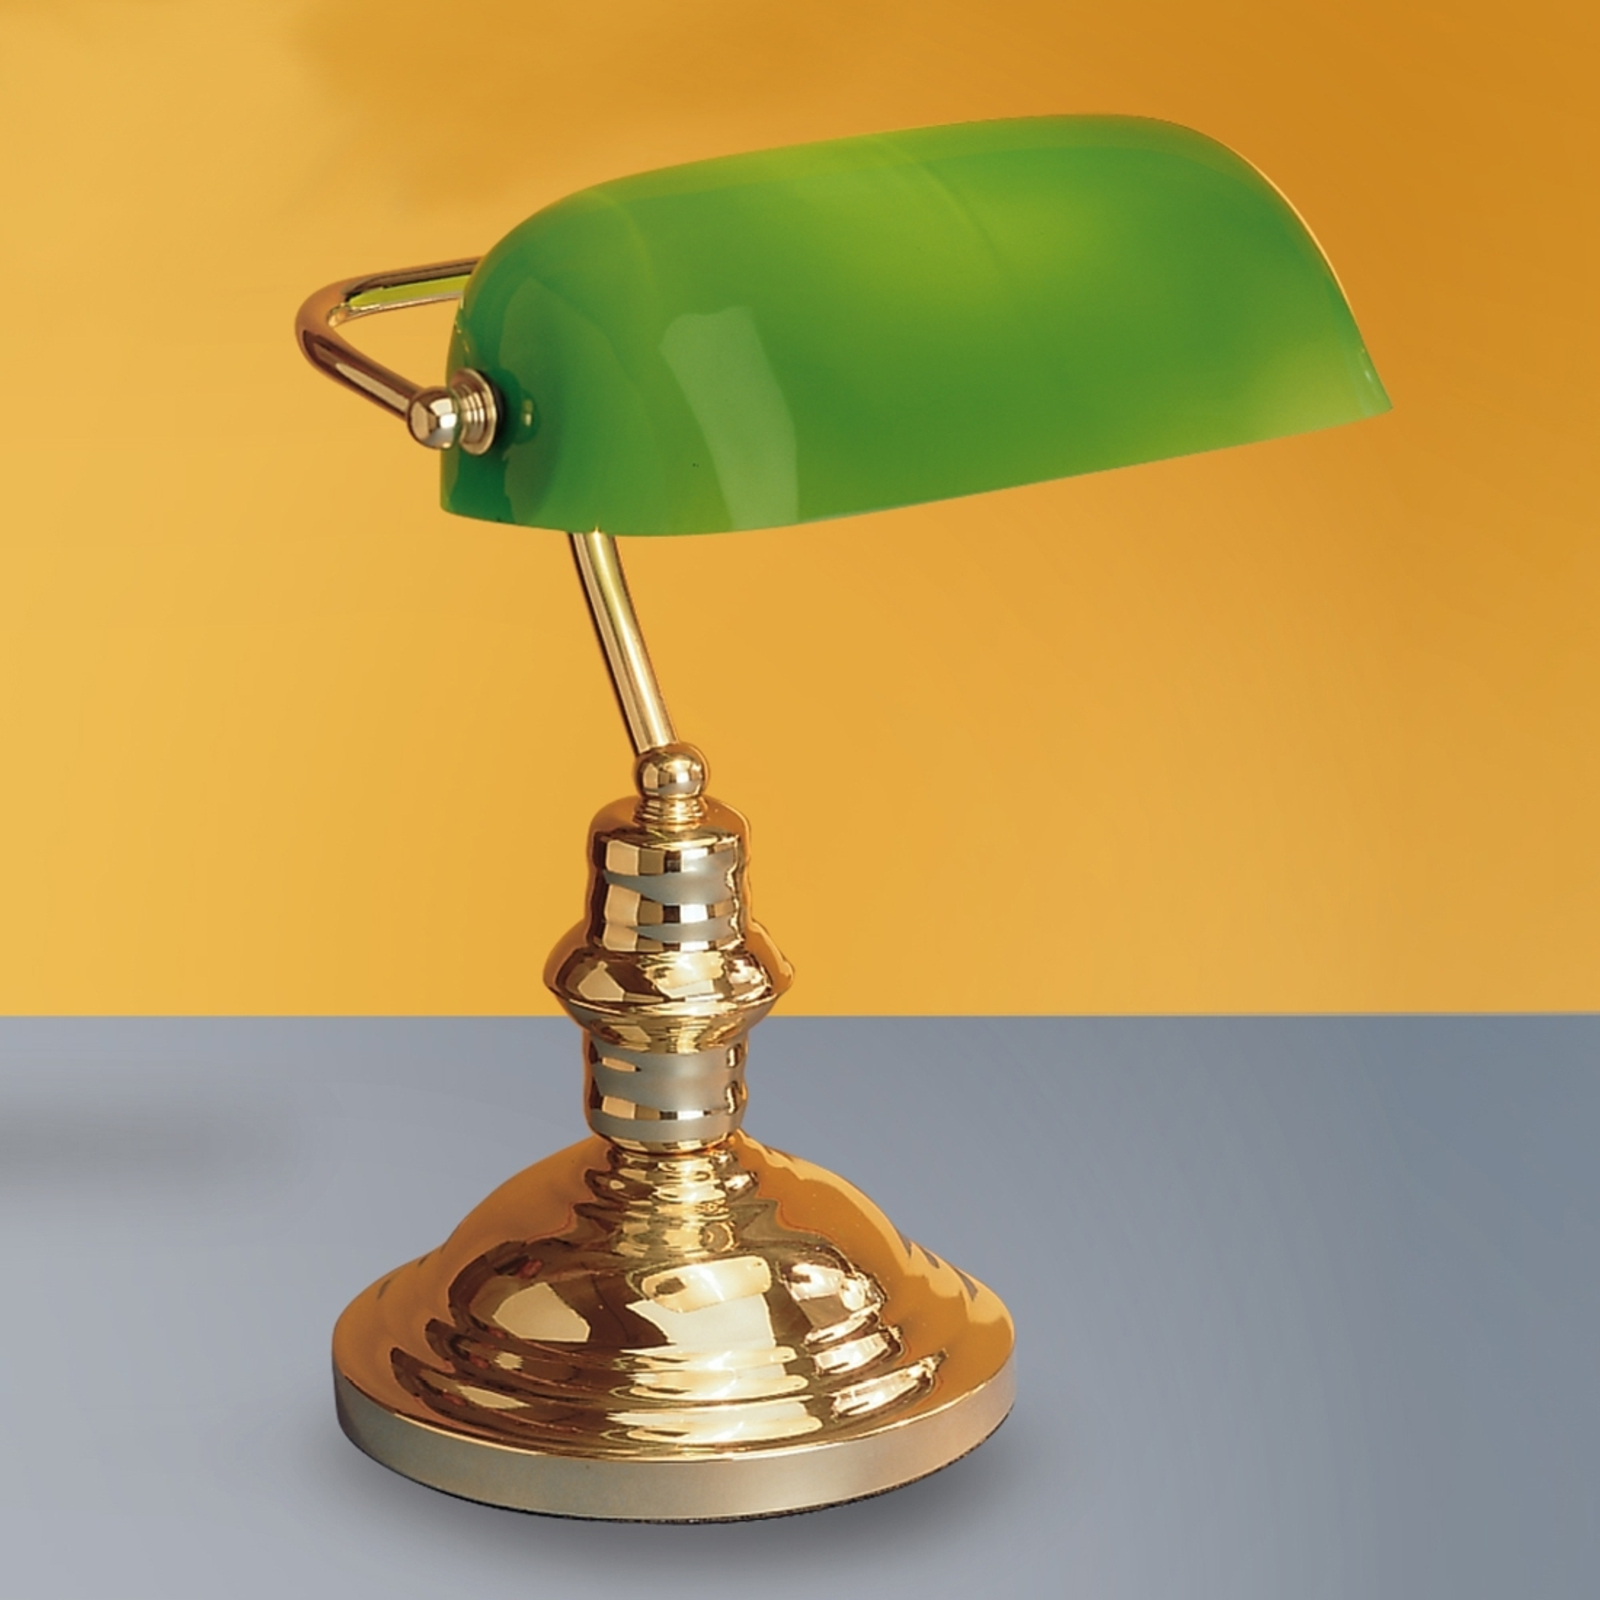 Vakker Onella bordlampe grønn